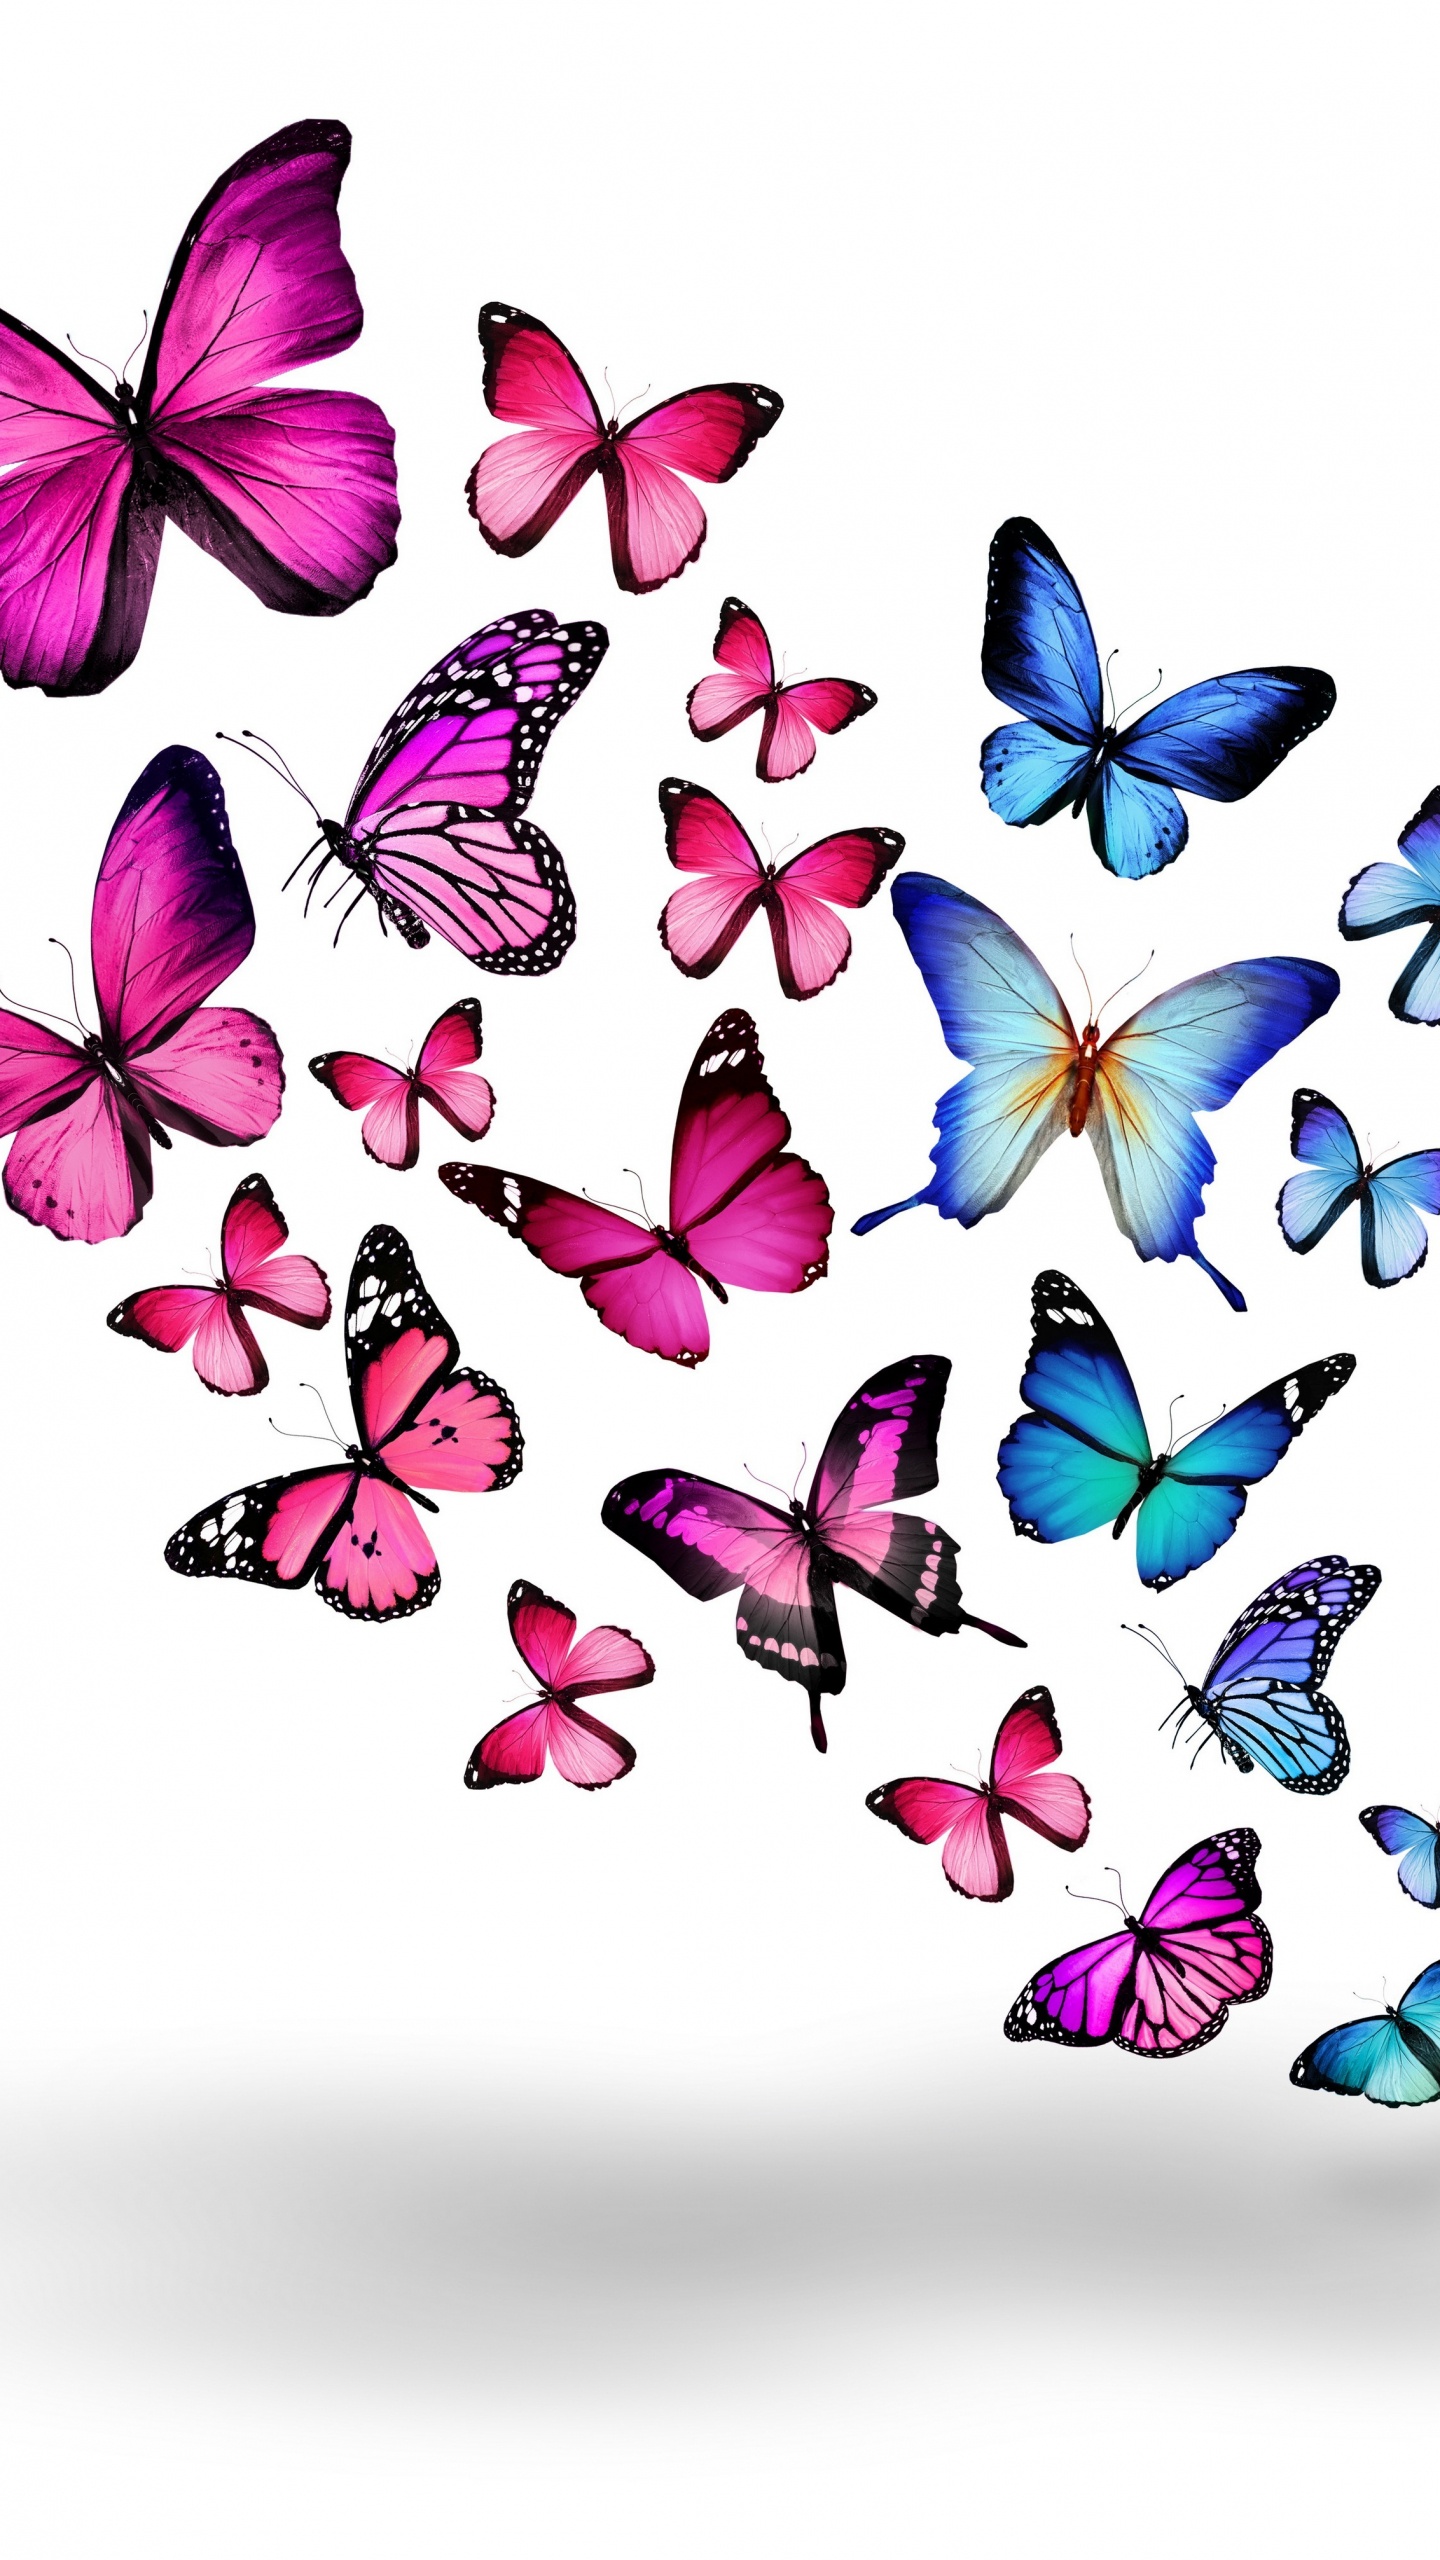 Papillons Bleus et Violets Sur Fond Blanc. Wallpaper in 1440x2560 Resolution